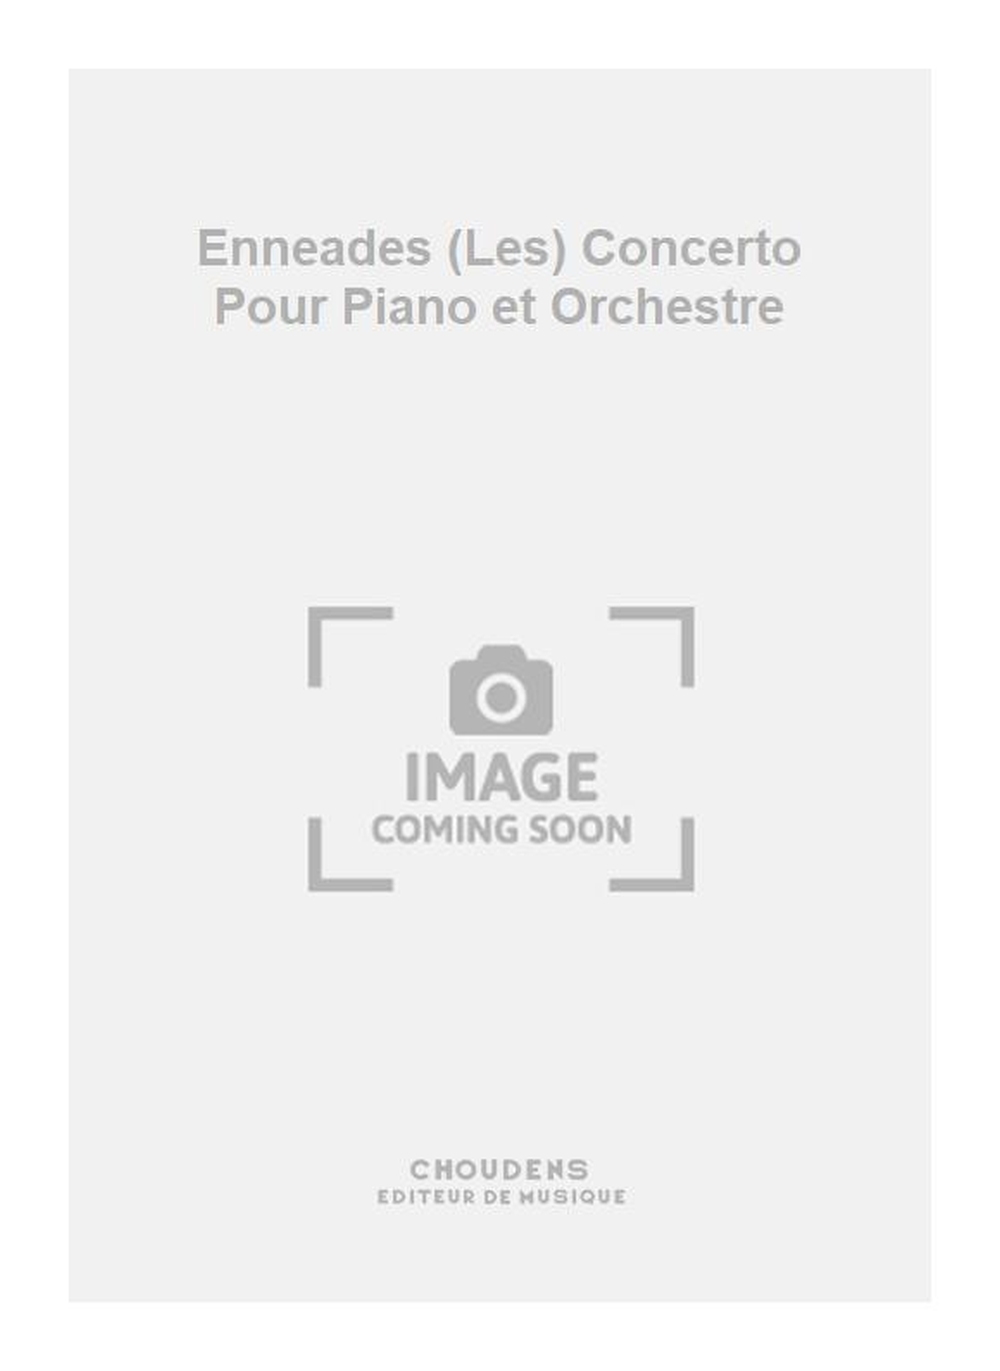 Alain Roizenblat: Enneades (Les) Concerto Pour Piano et Orchestre